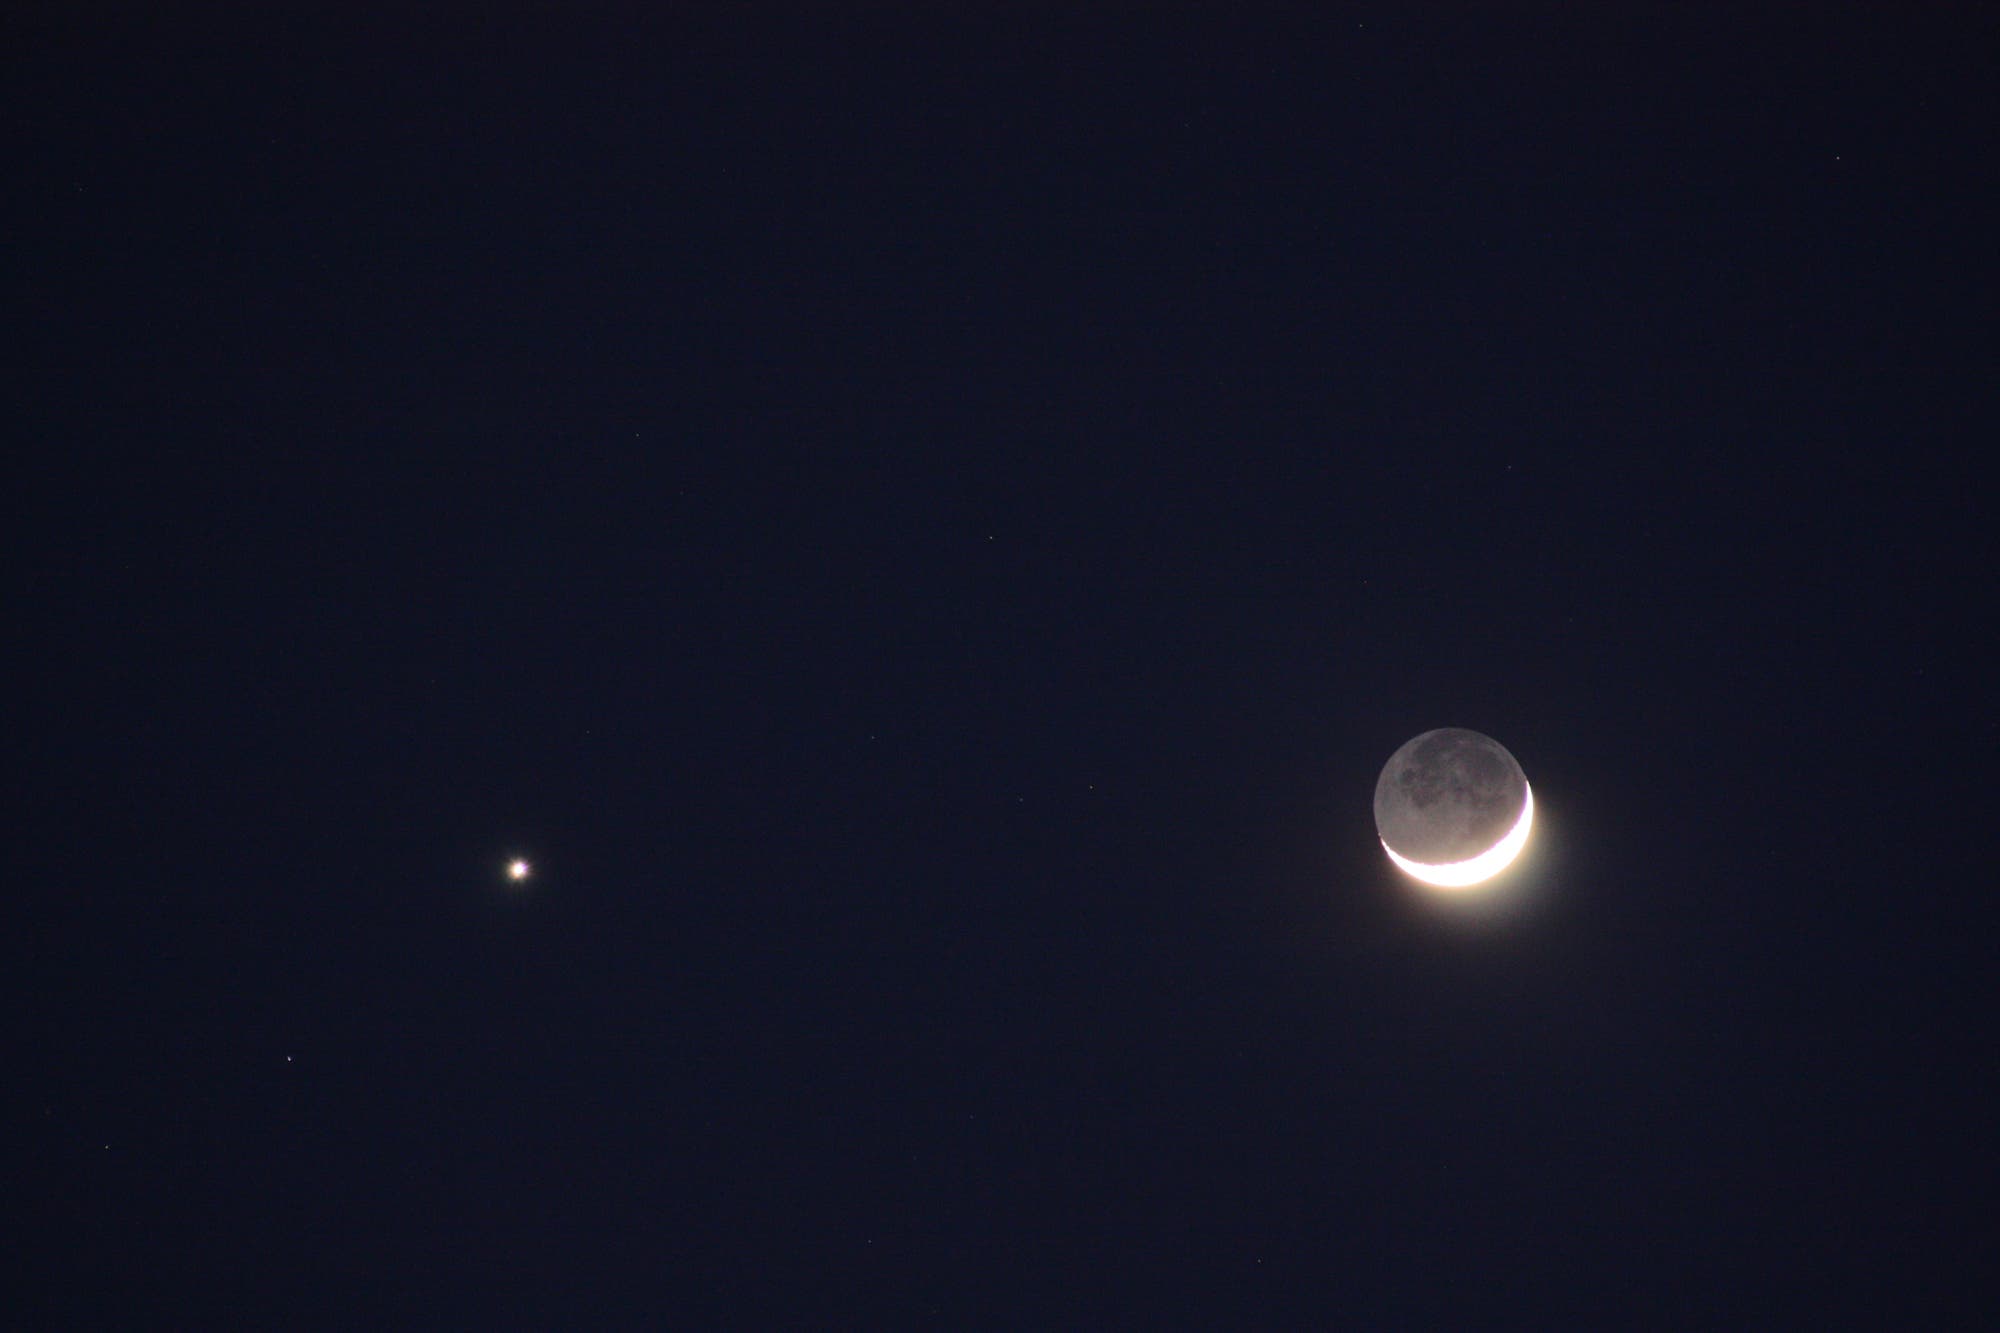 Venus und liegende Mondsichel